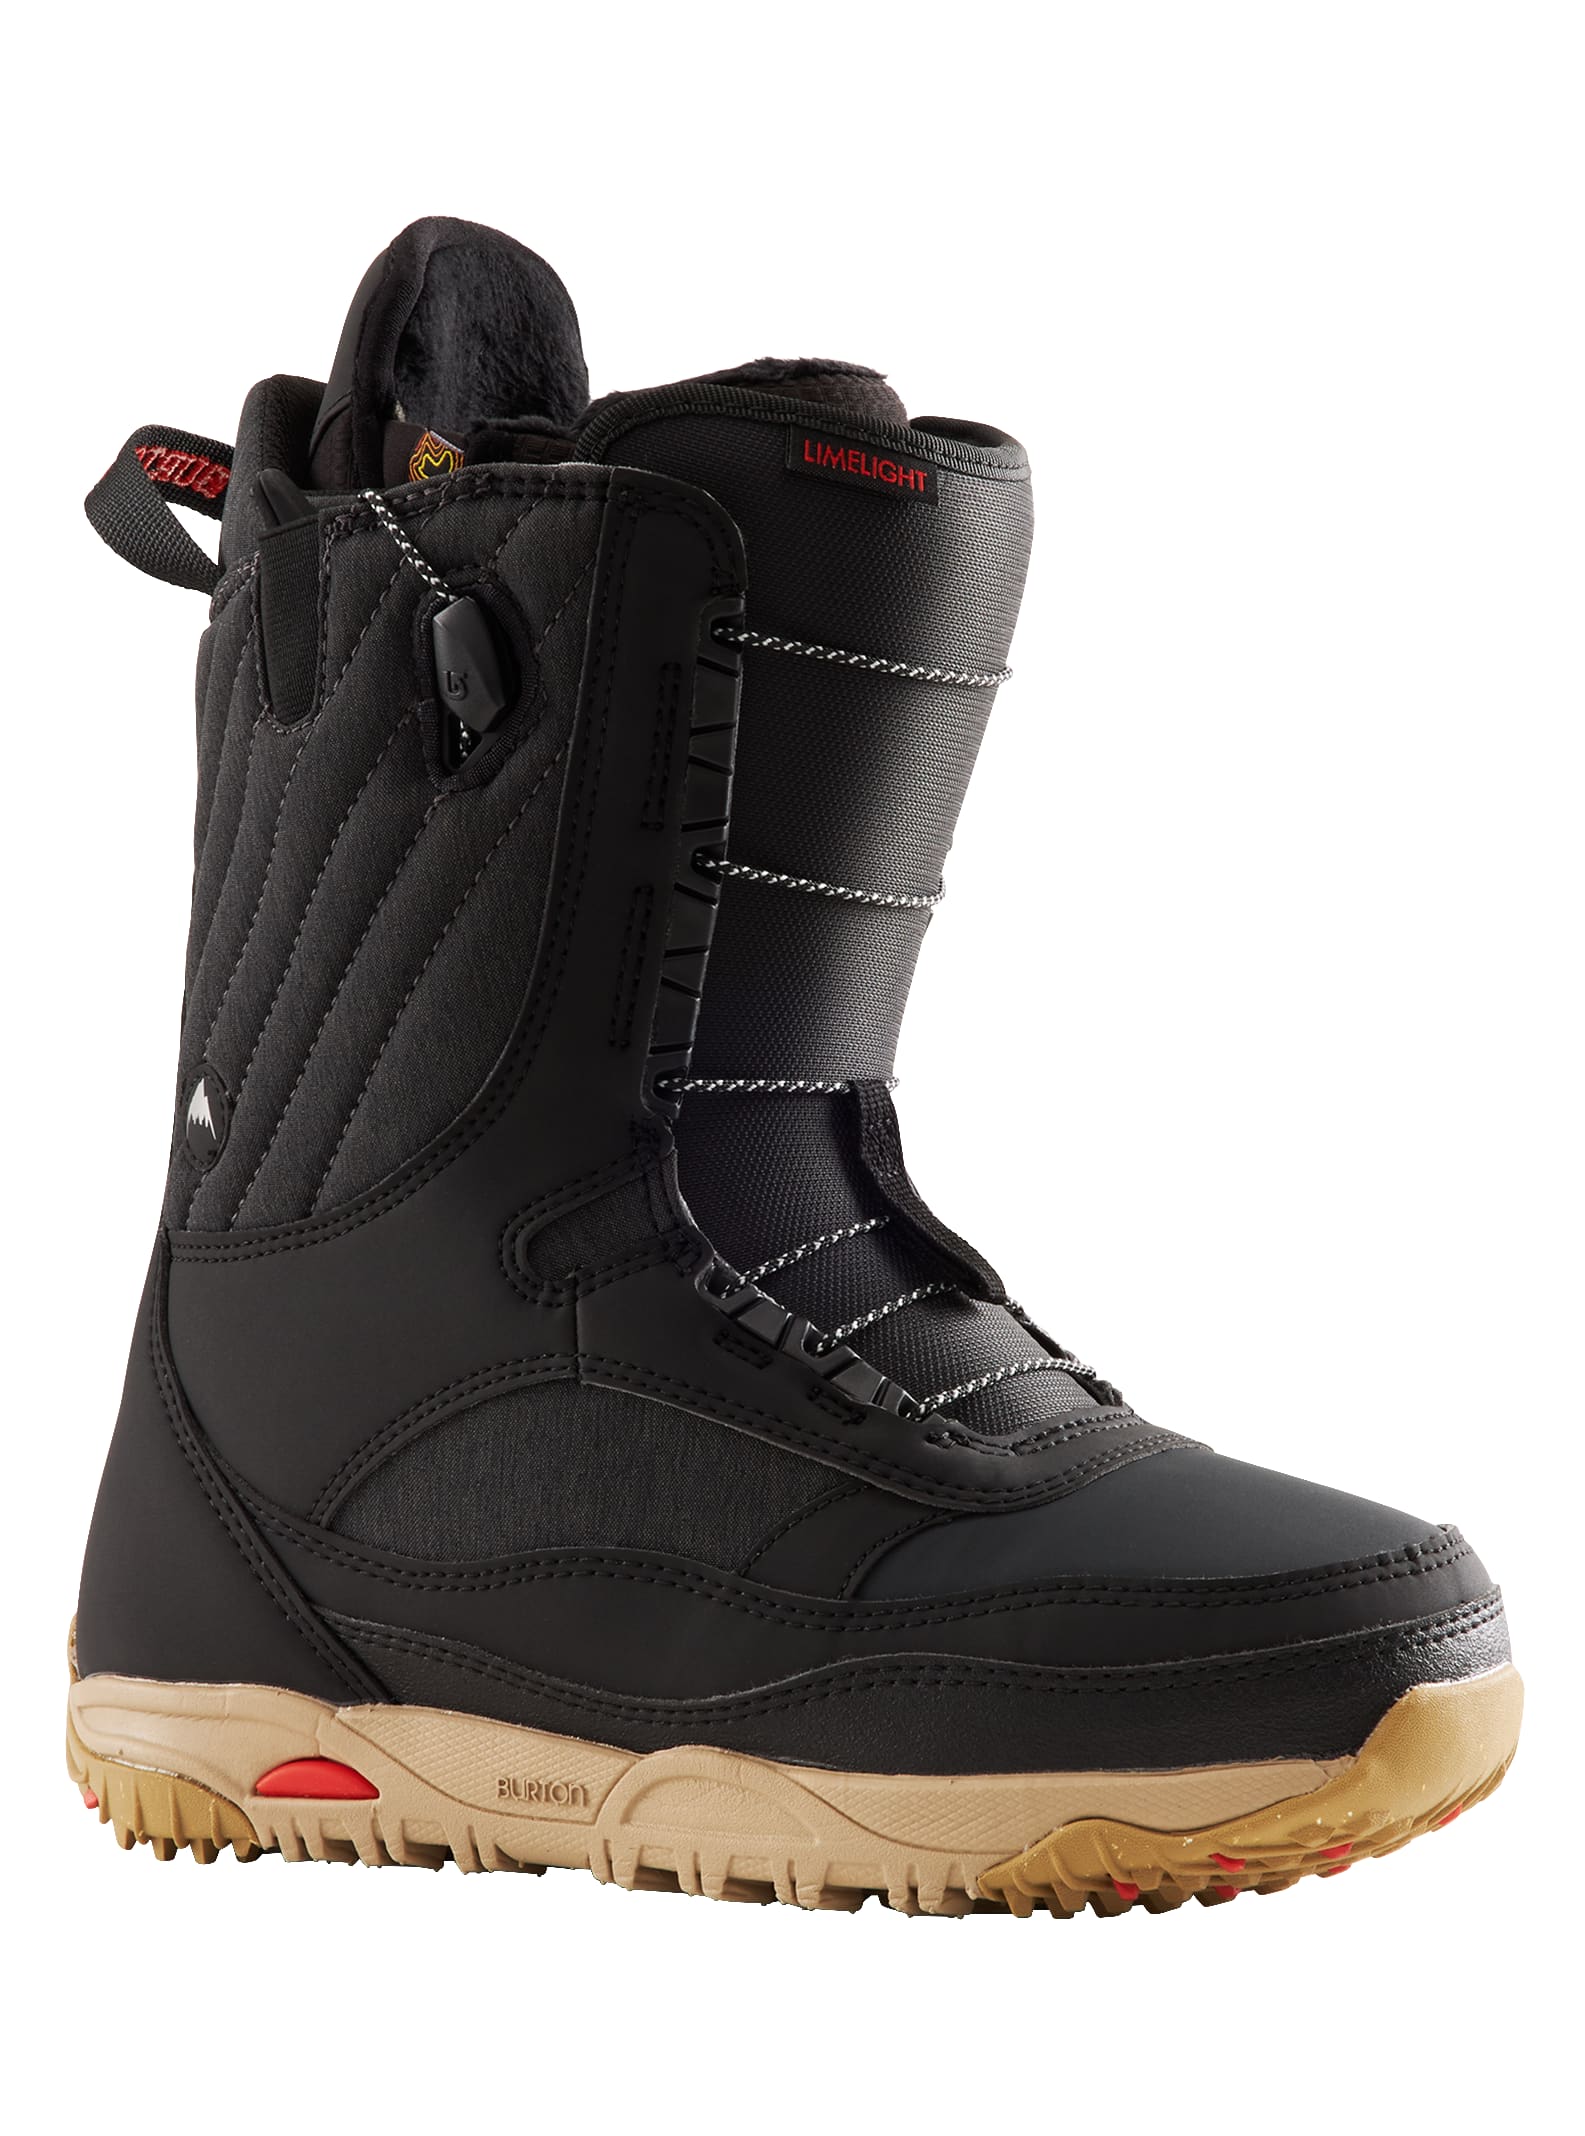 Burton - Boots de snowboard Limelight pour femme, Black, 9.0 product